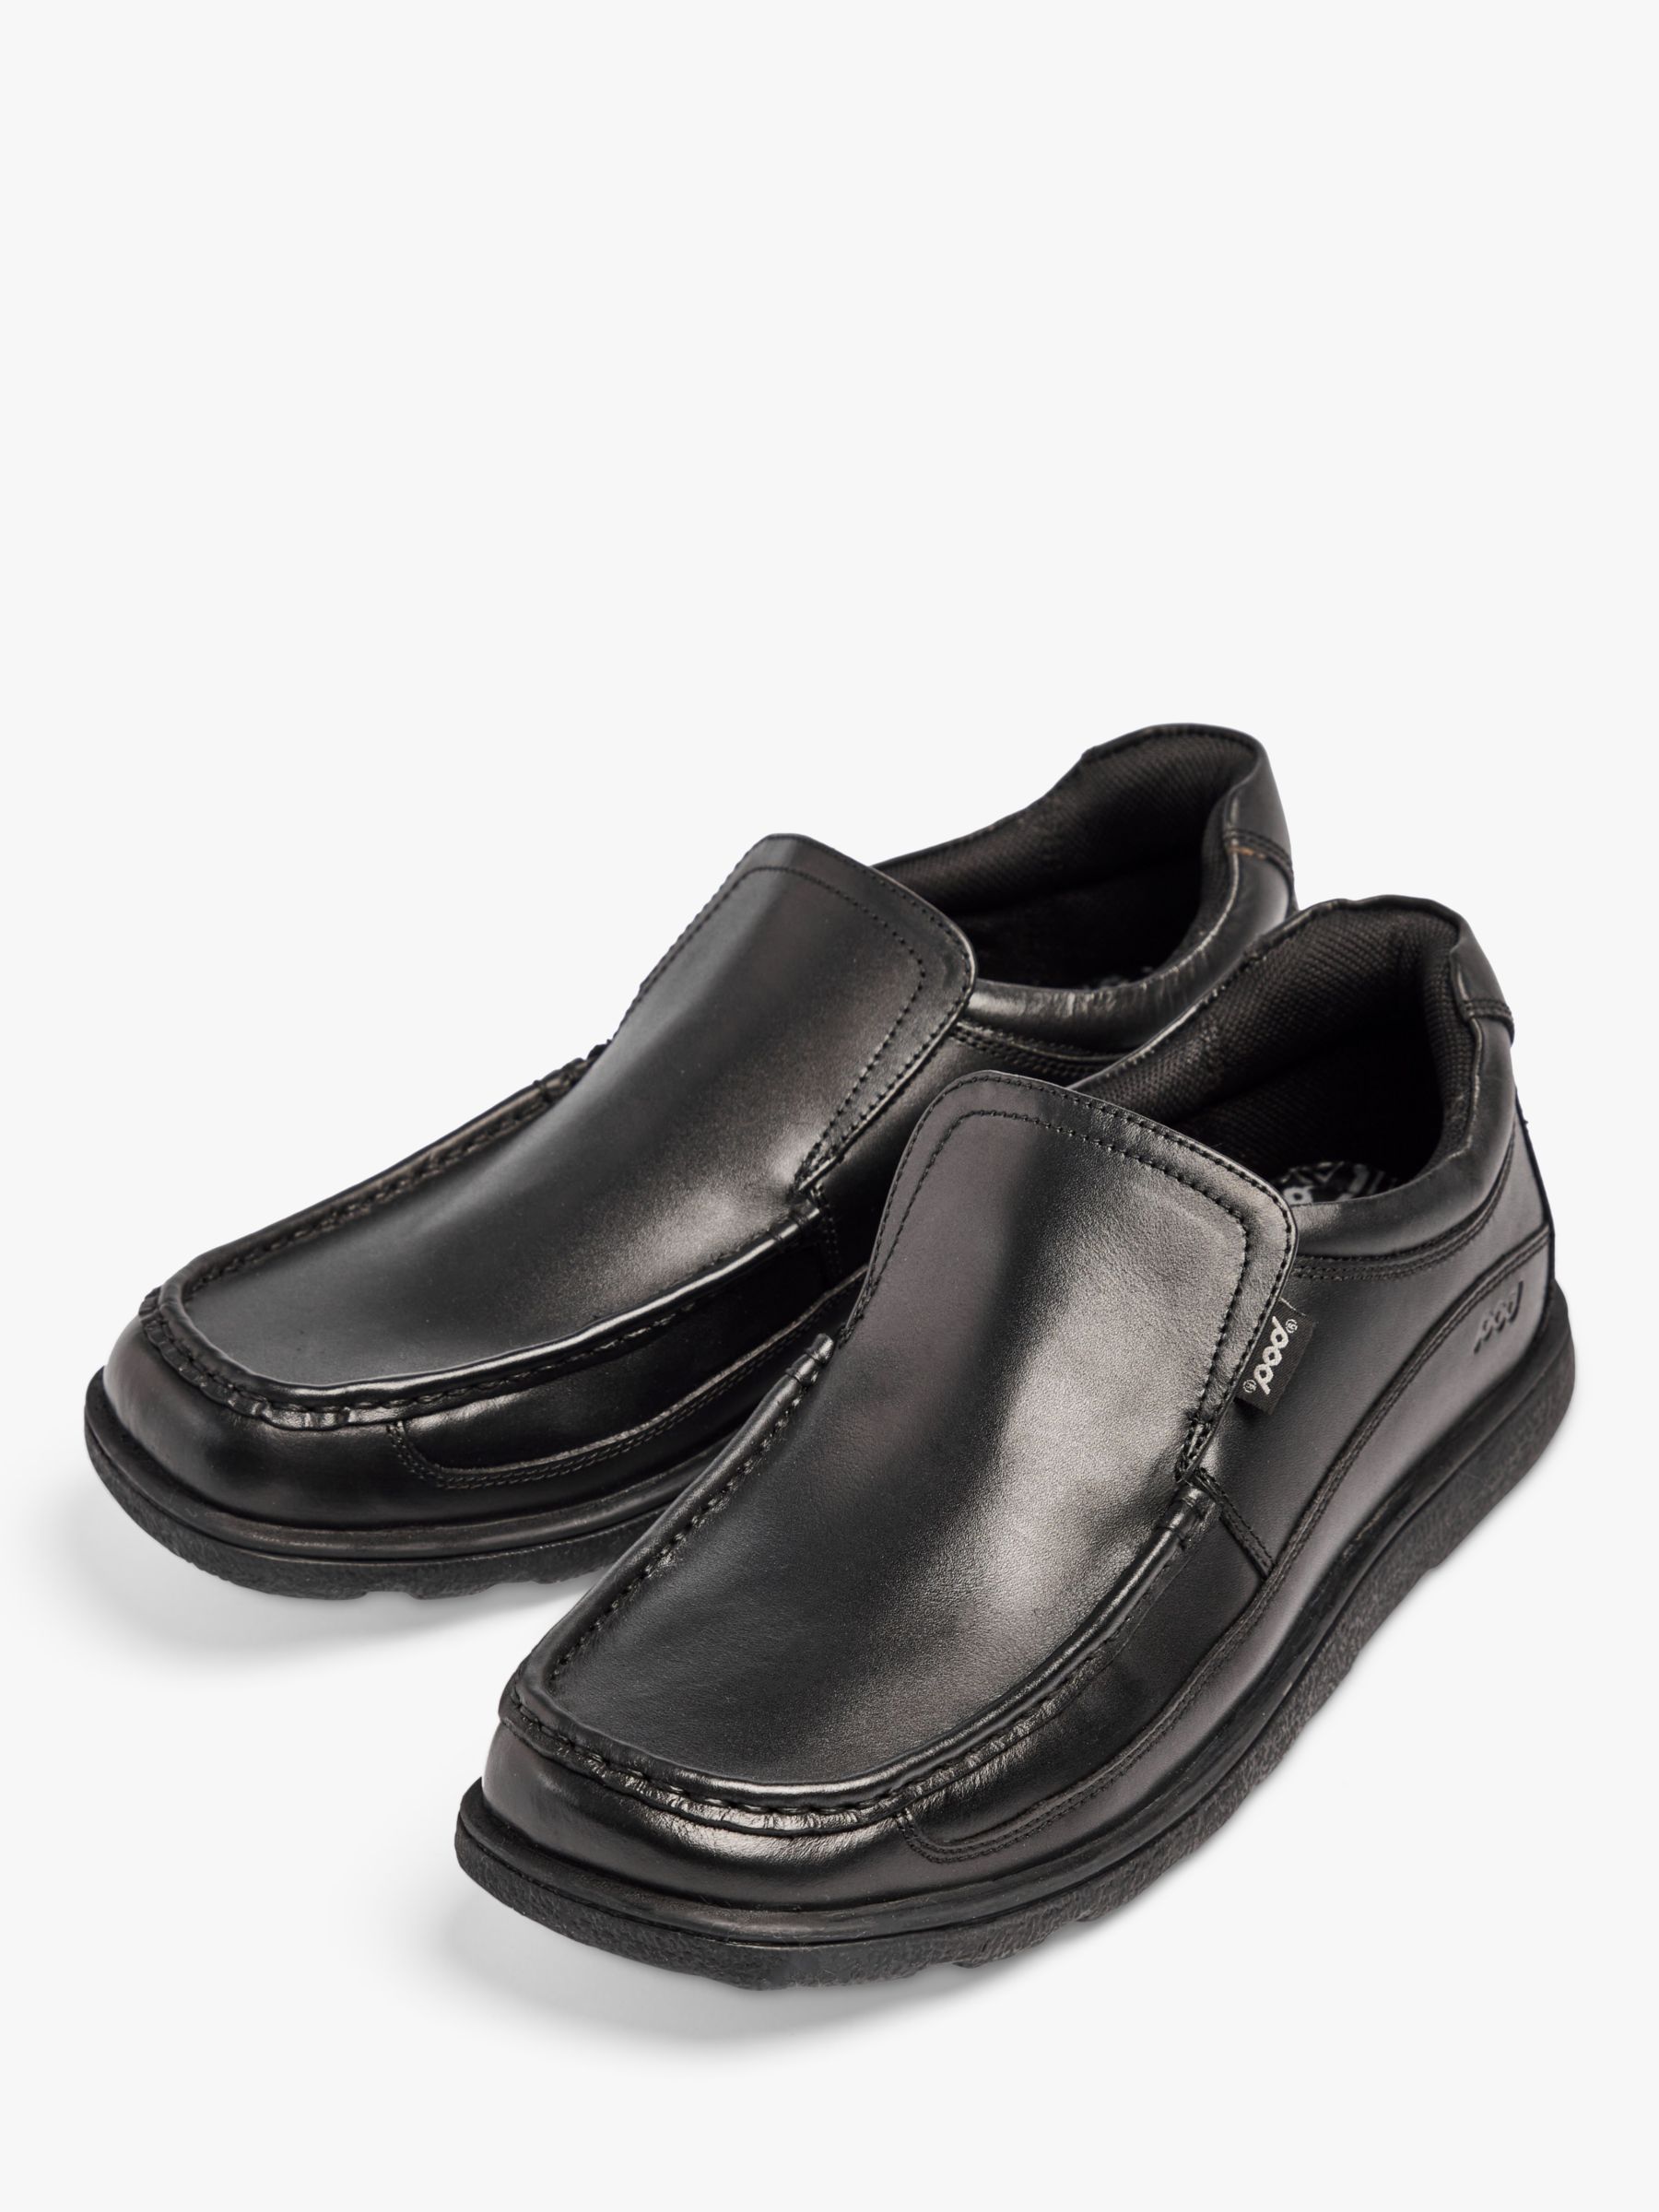 Pod Men's Leather Shoes, Black, 8